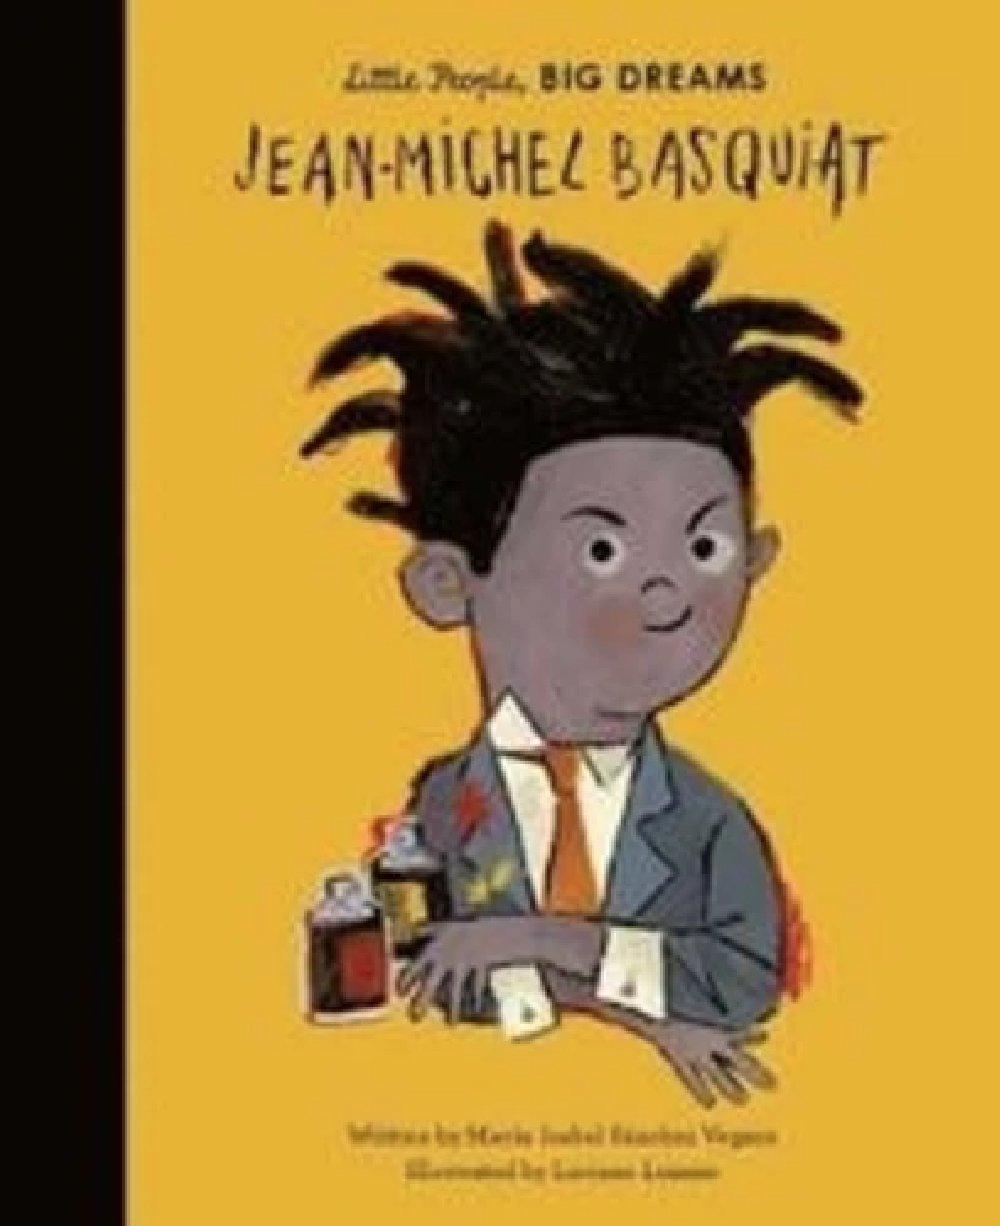 Little people, big dreams Jean-Michel Basquiat / Anglais